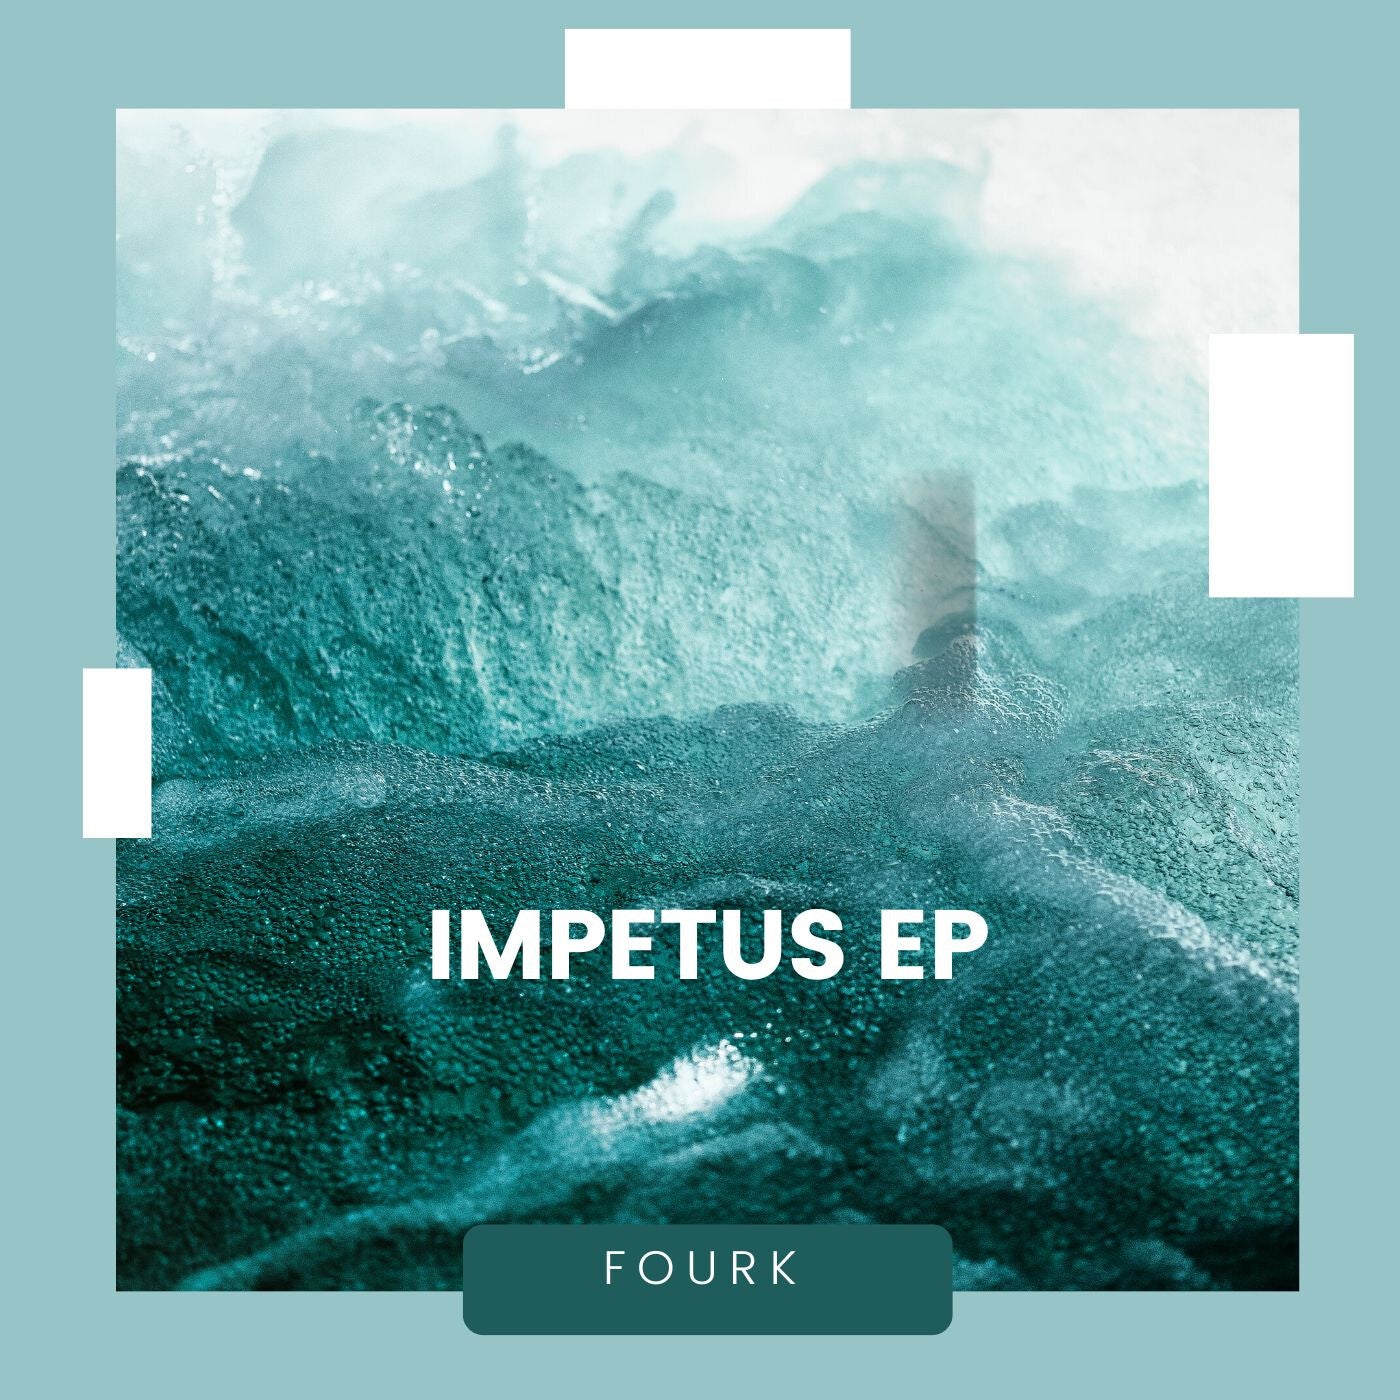 Impetus EP